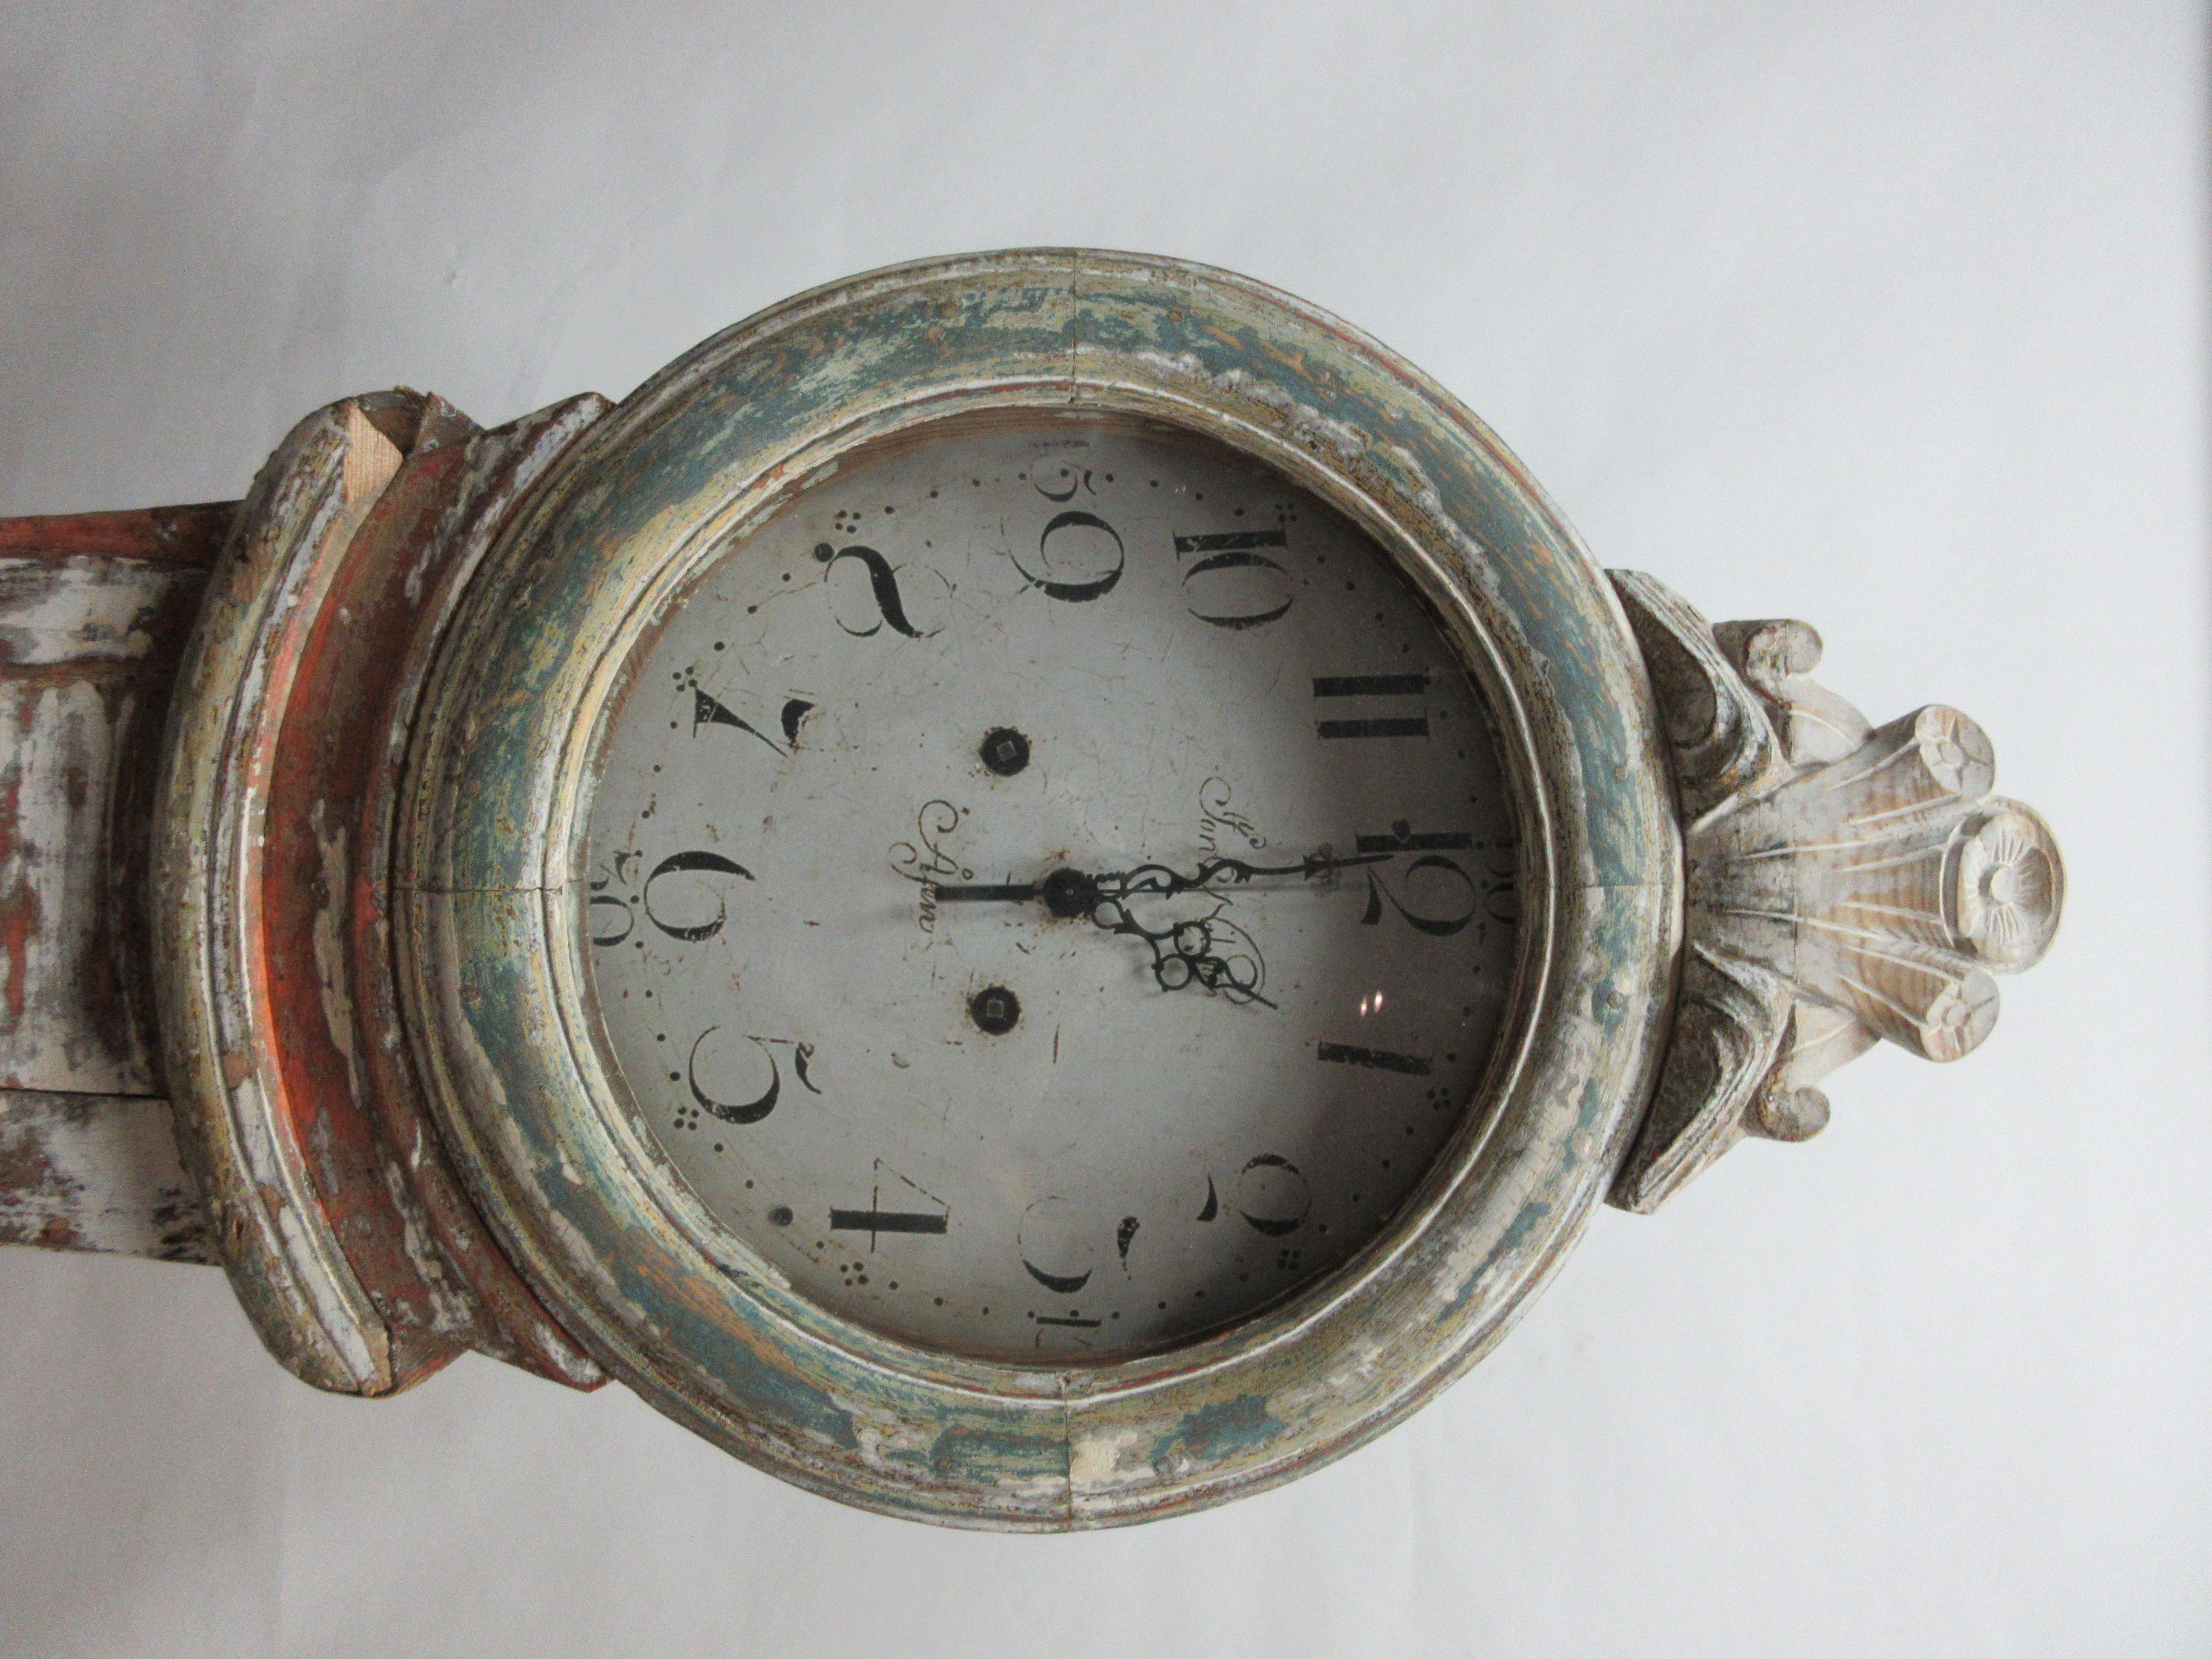 Il s'agit d'une horloge Mora suédoise peinte 100% originale, modèle 